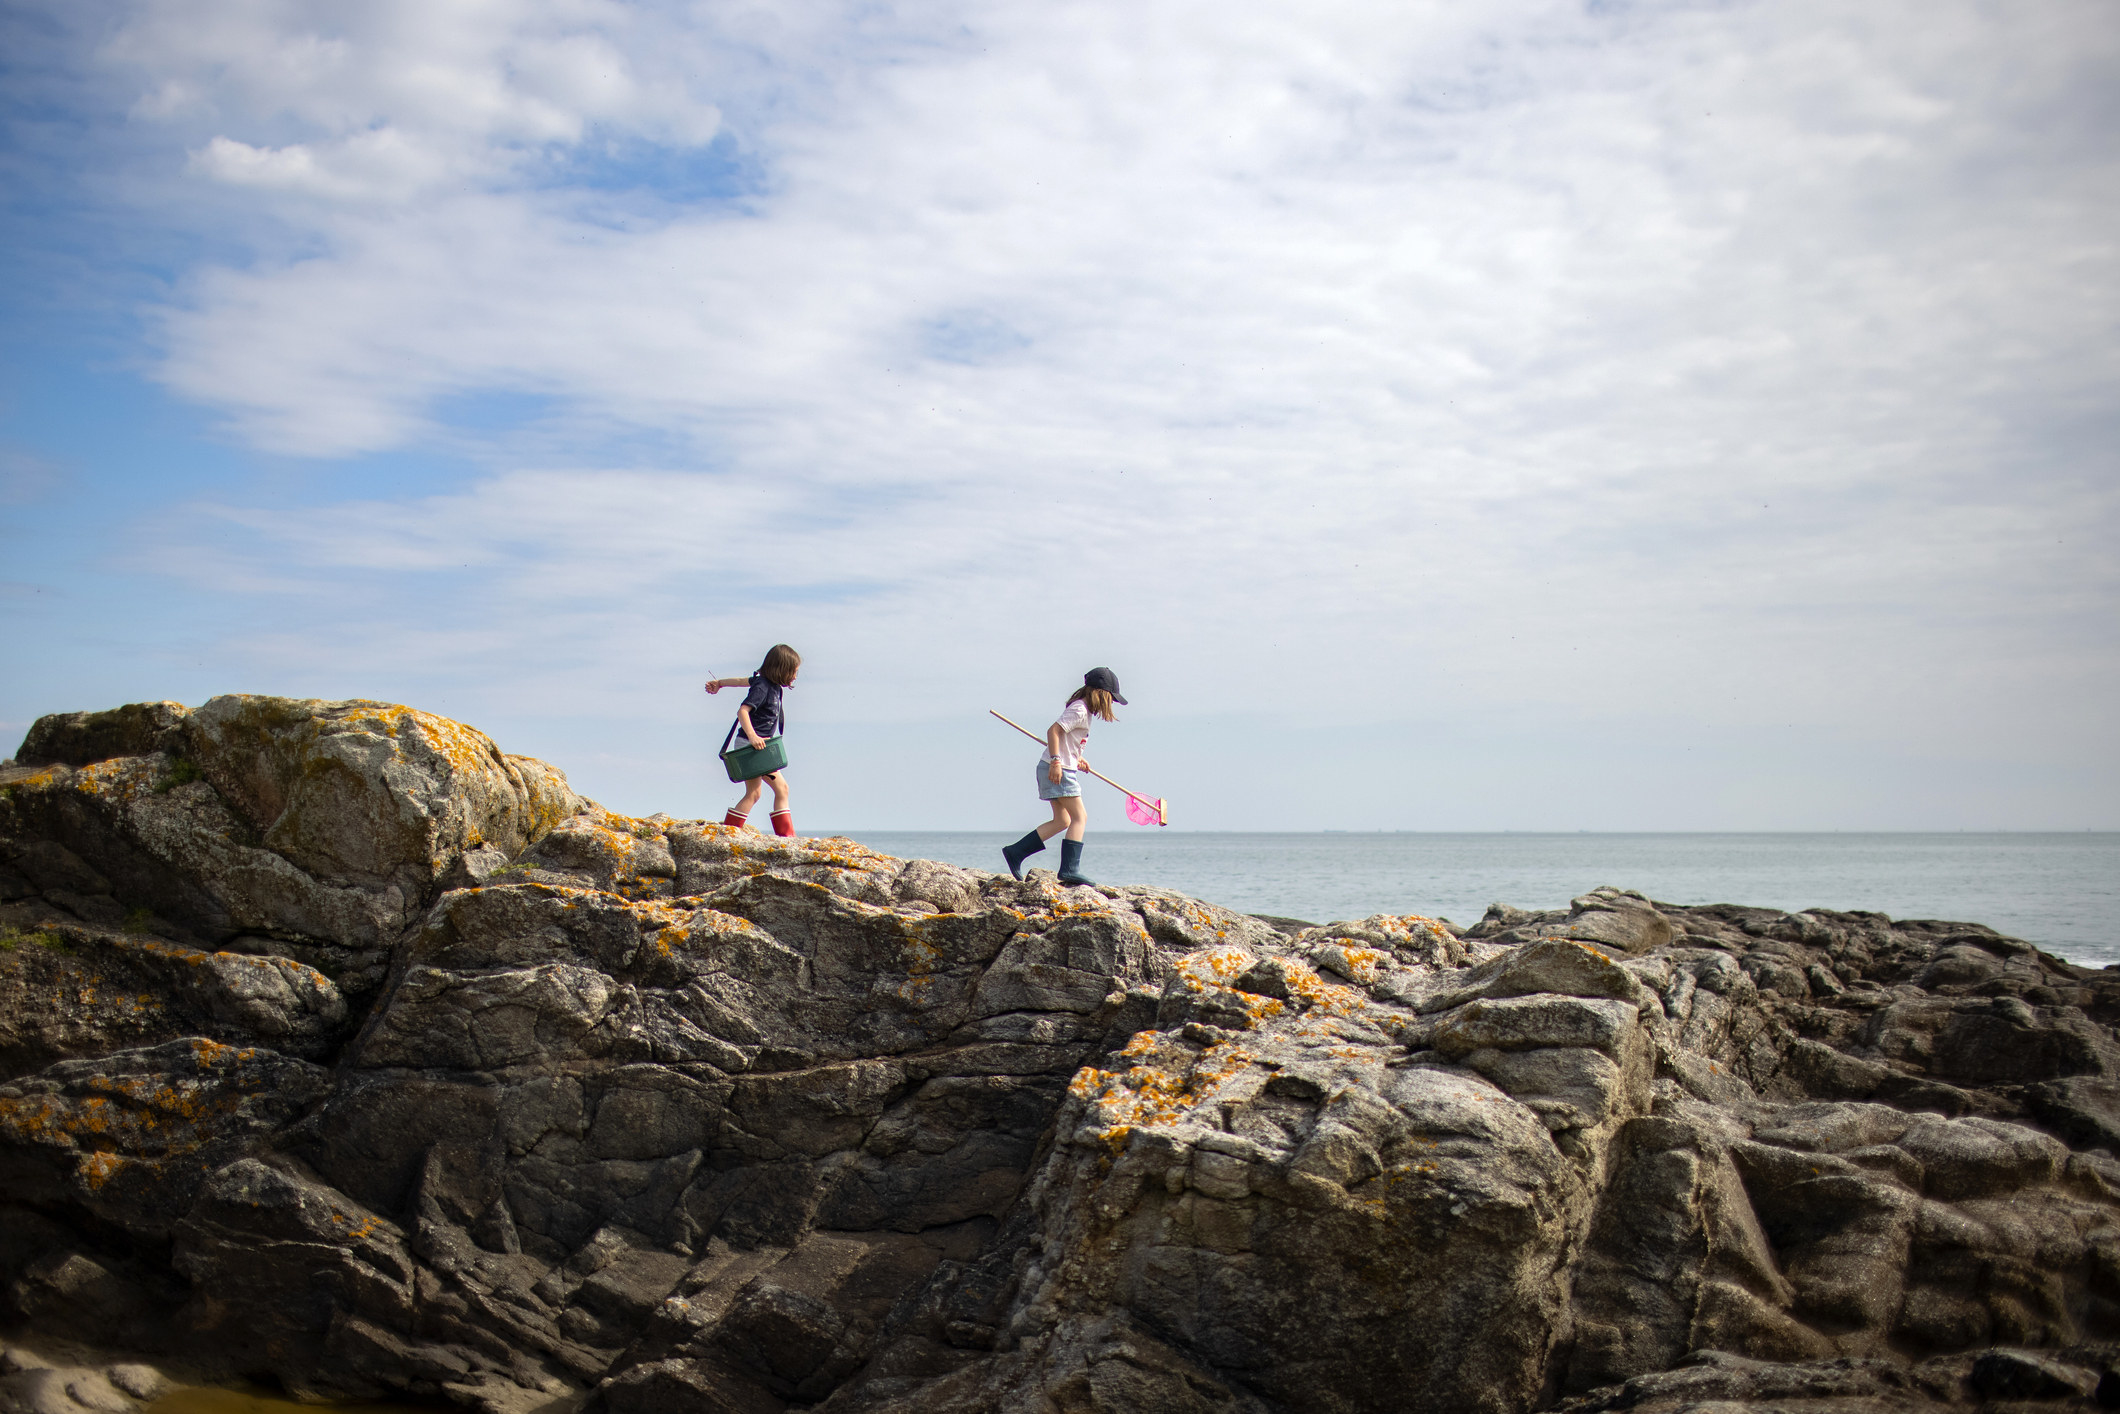 Two girls walking on rocks by the seaside.